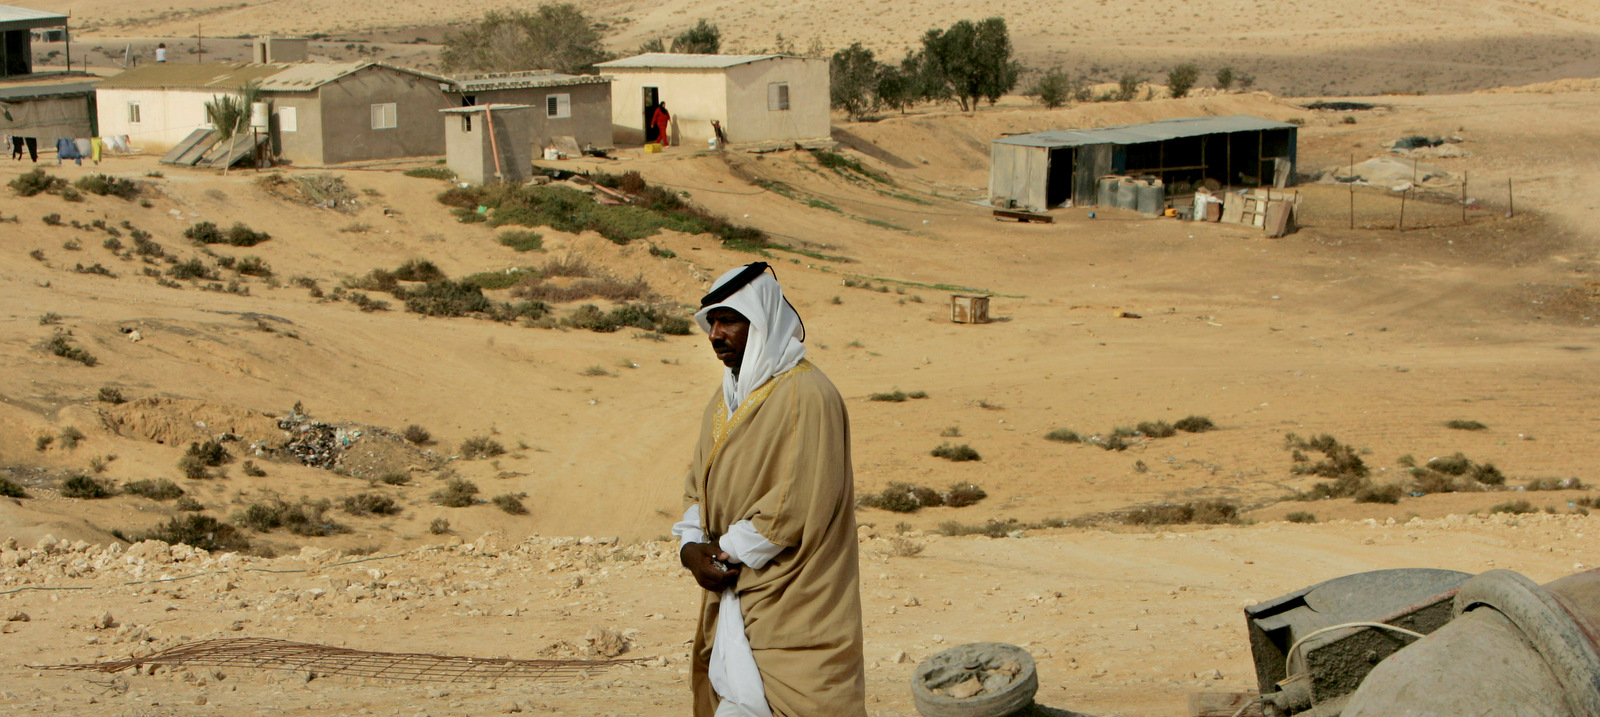 Un jeque beduino camina en la aldea no reconocida de Wadi El Naam, sur de Israel, el jueves 20 de noviembre de 2008. Según los informes, las autoridades israelíes planeaban destruir una mezquita en la aldea porque fue construida sin un permiso, que los beduinos no pueden obtener en su comunidades no reconocidas. (AP / Tara Todras-Whitehill)